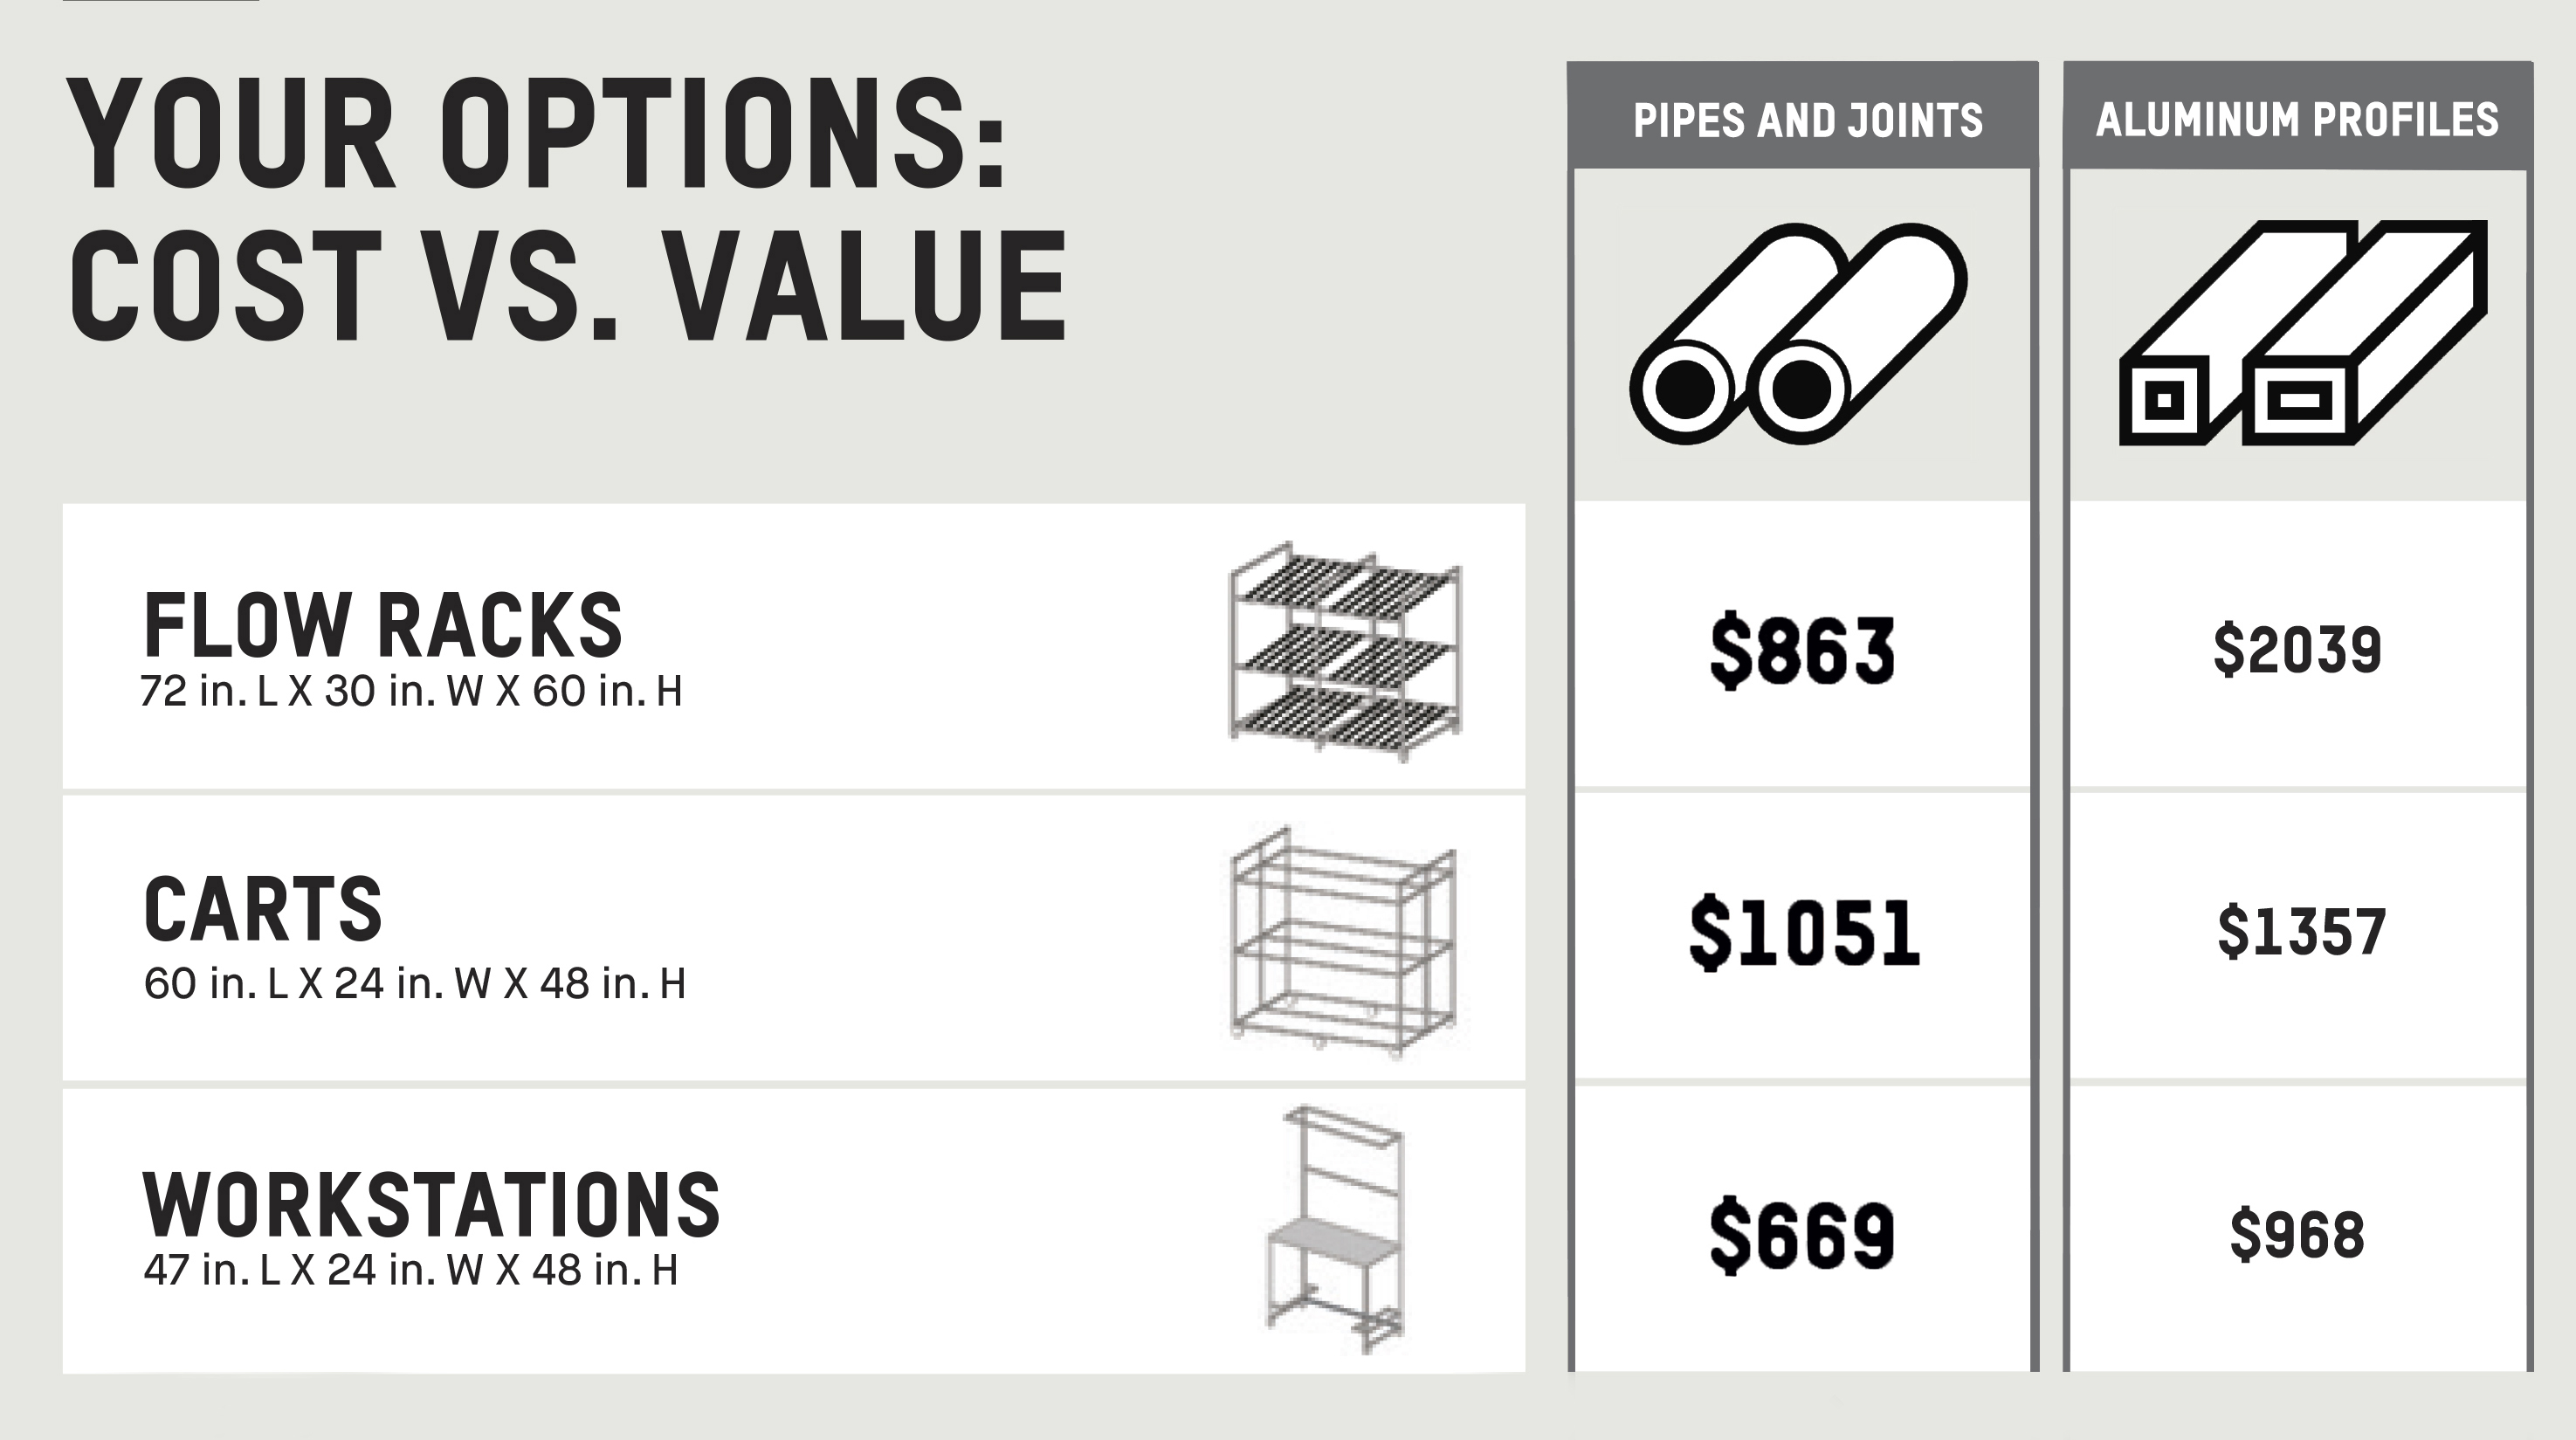 Gráfico que muestra los diferentes precios de las mismas estructuras, en aluminio o tubos